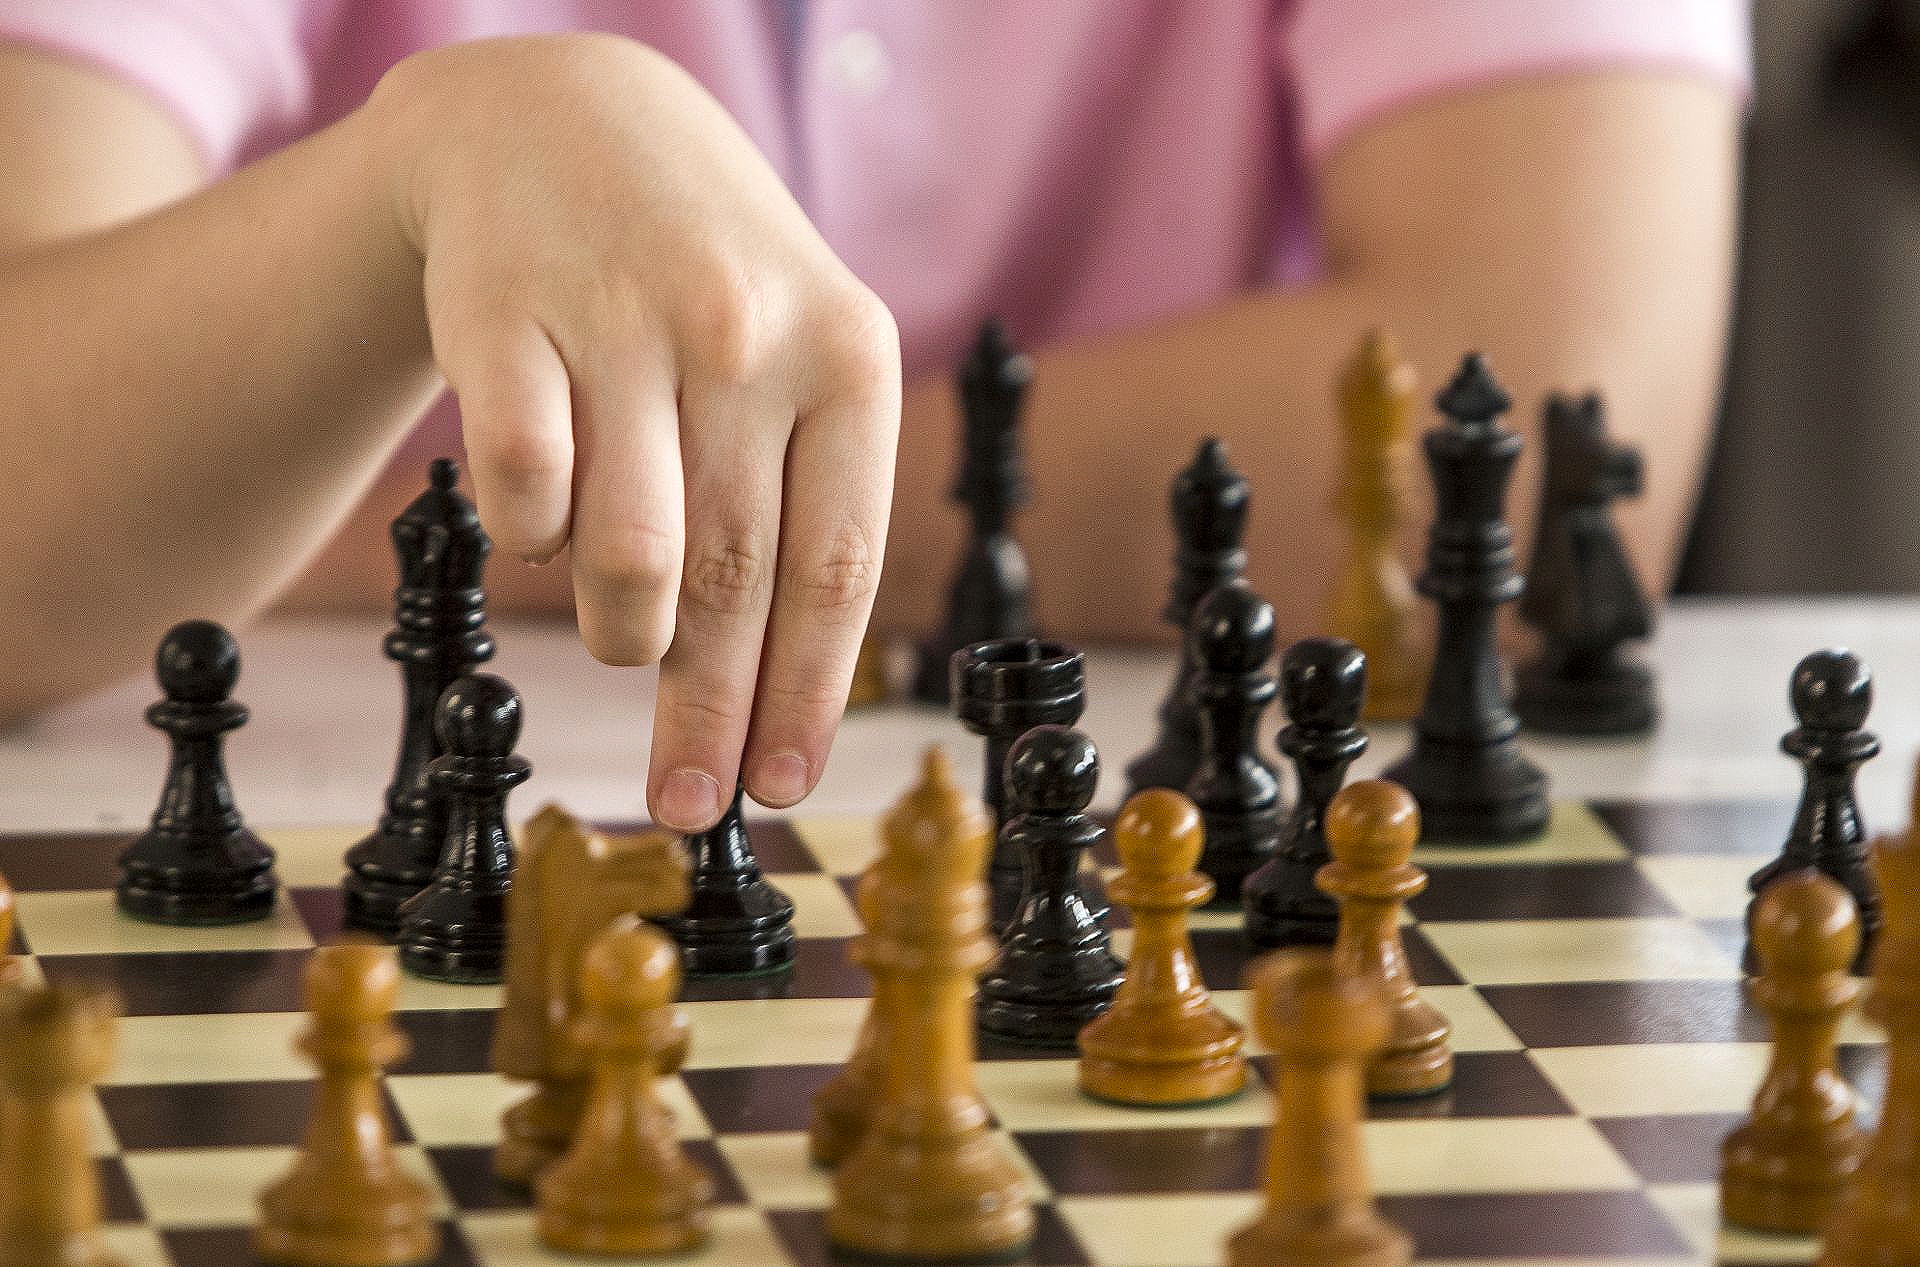 Inscrições abertas para 2ª edição do Torneio Aberto de Xadrez em Itaboraí